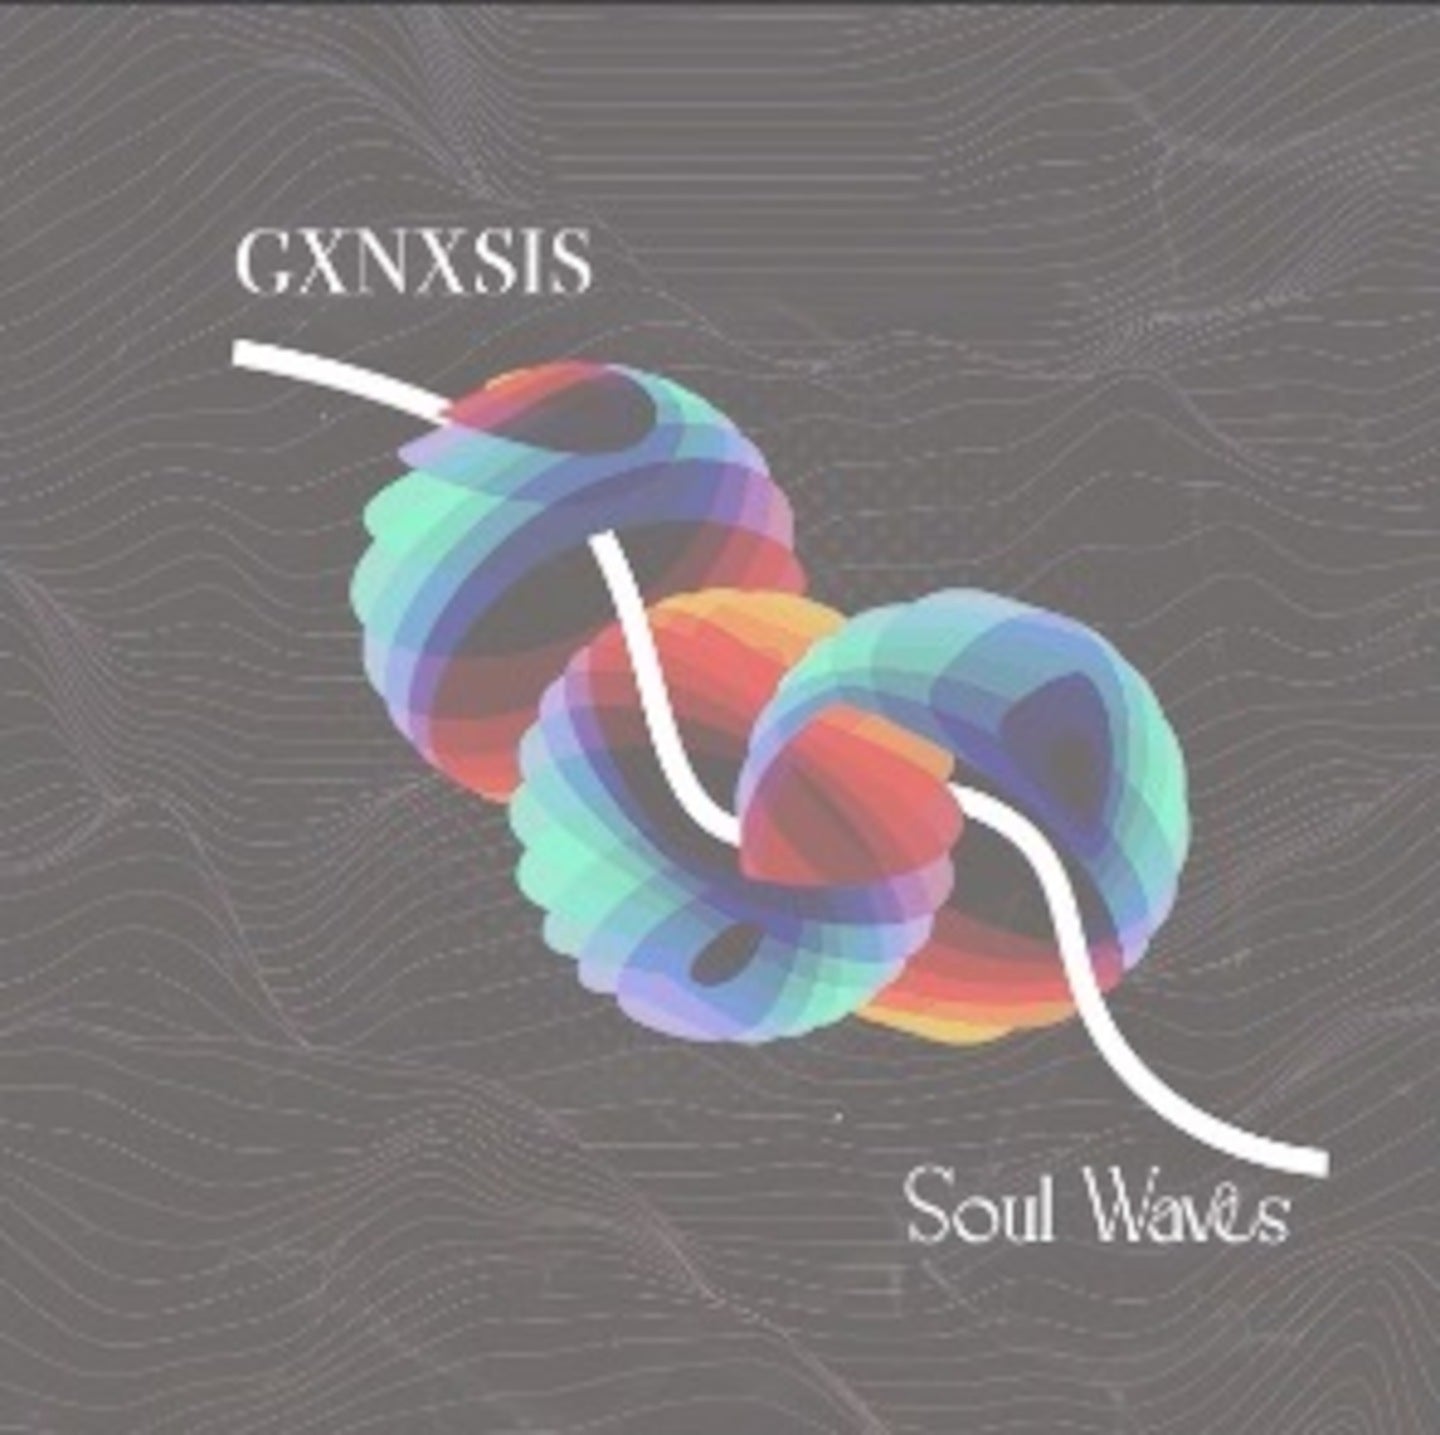 GXNXSIS   Soul Waves Drum & Sample Pack   Vinyl Shaker Loop (130 BPM) 24b 2